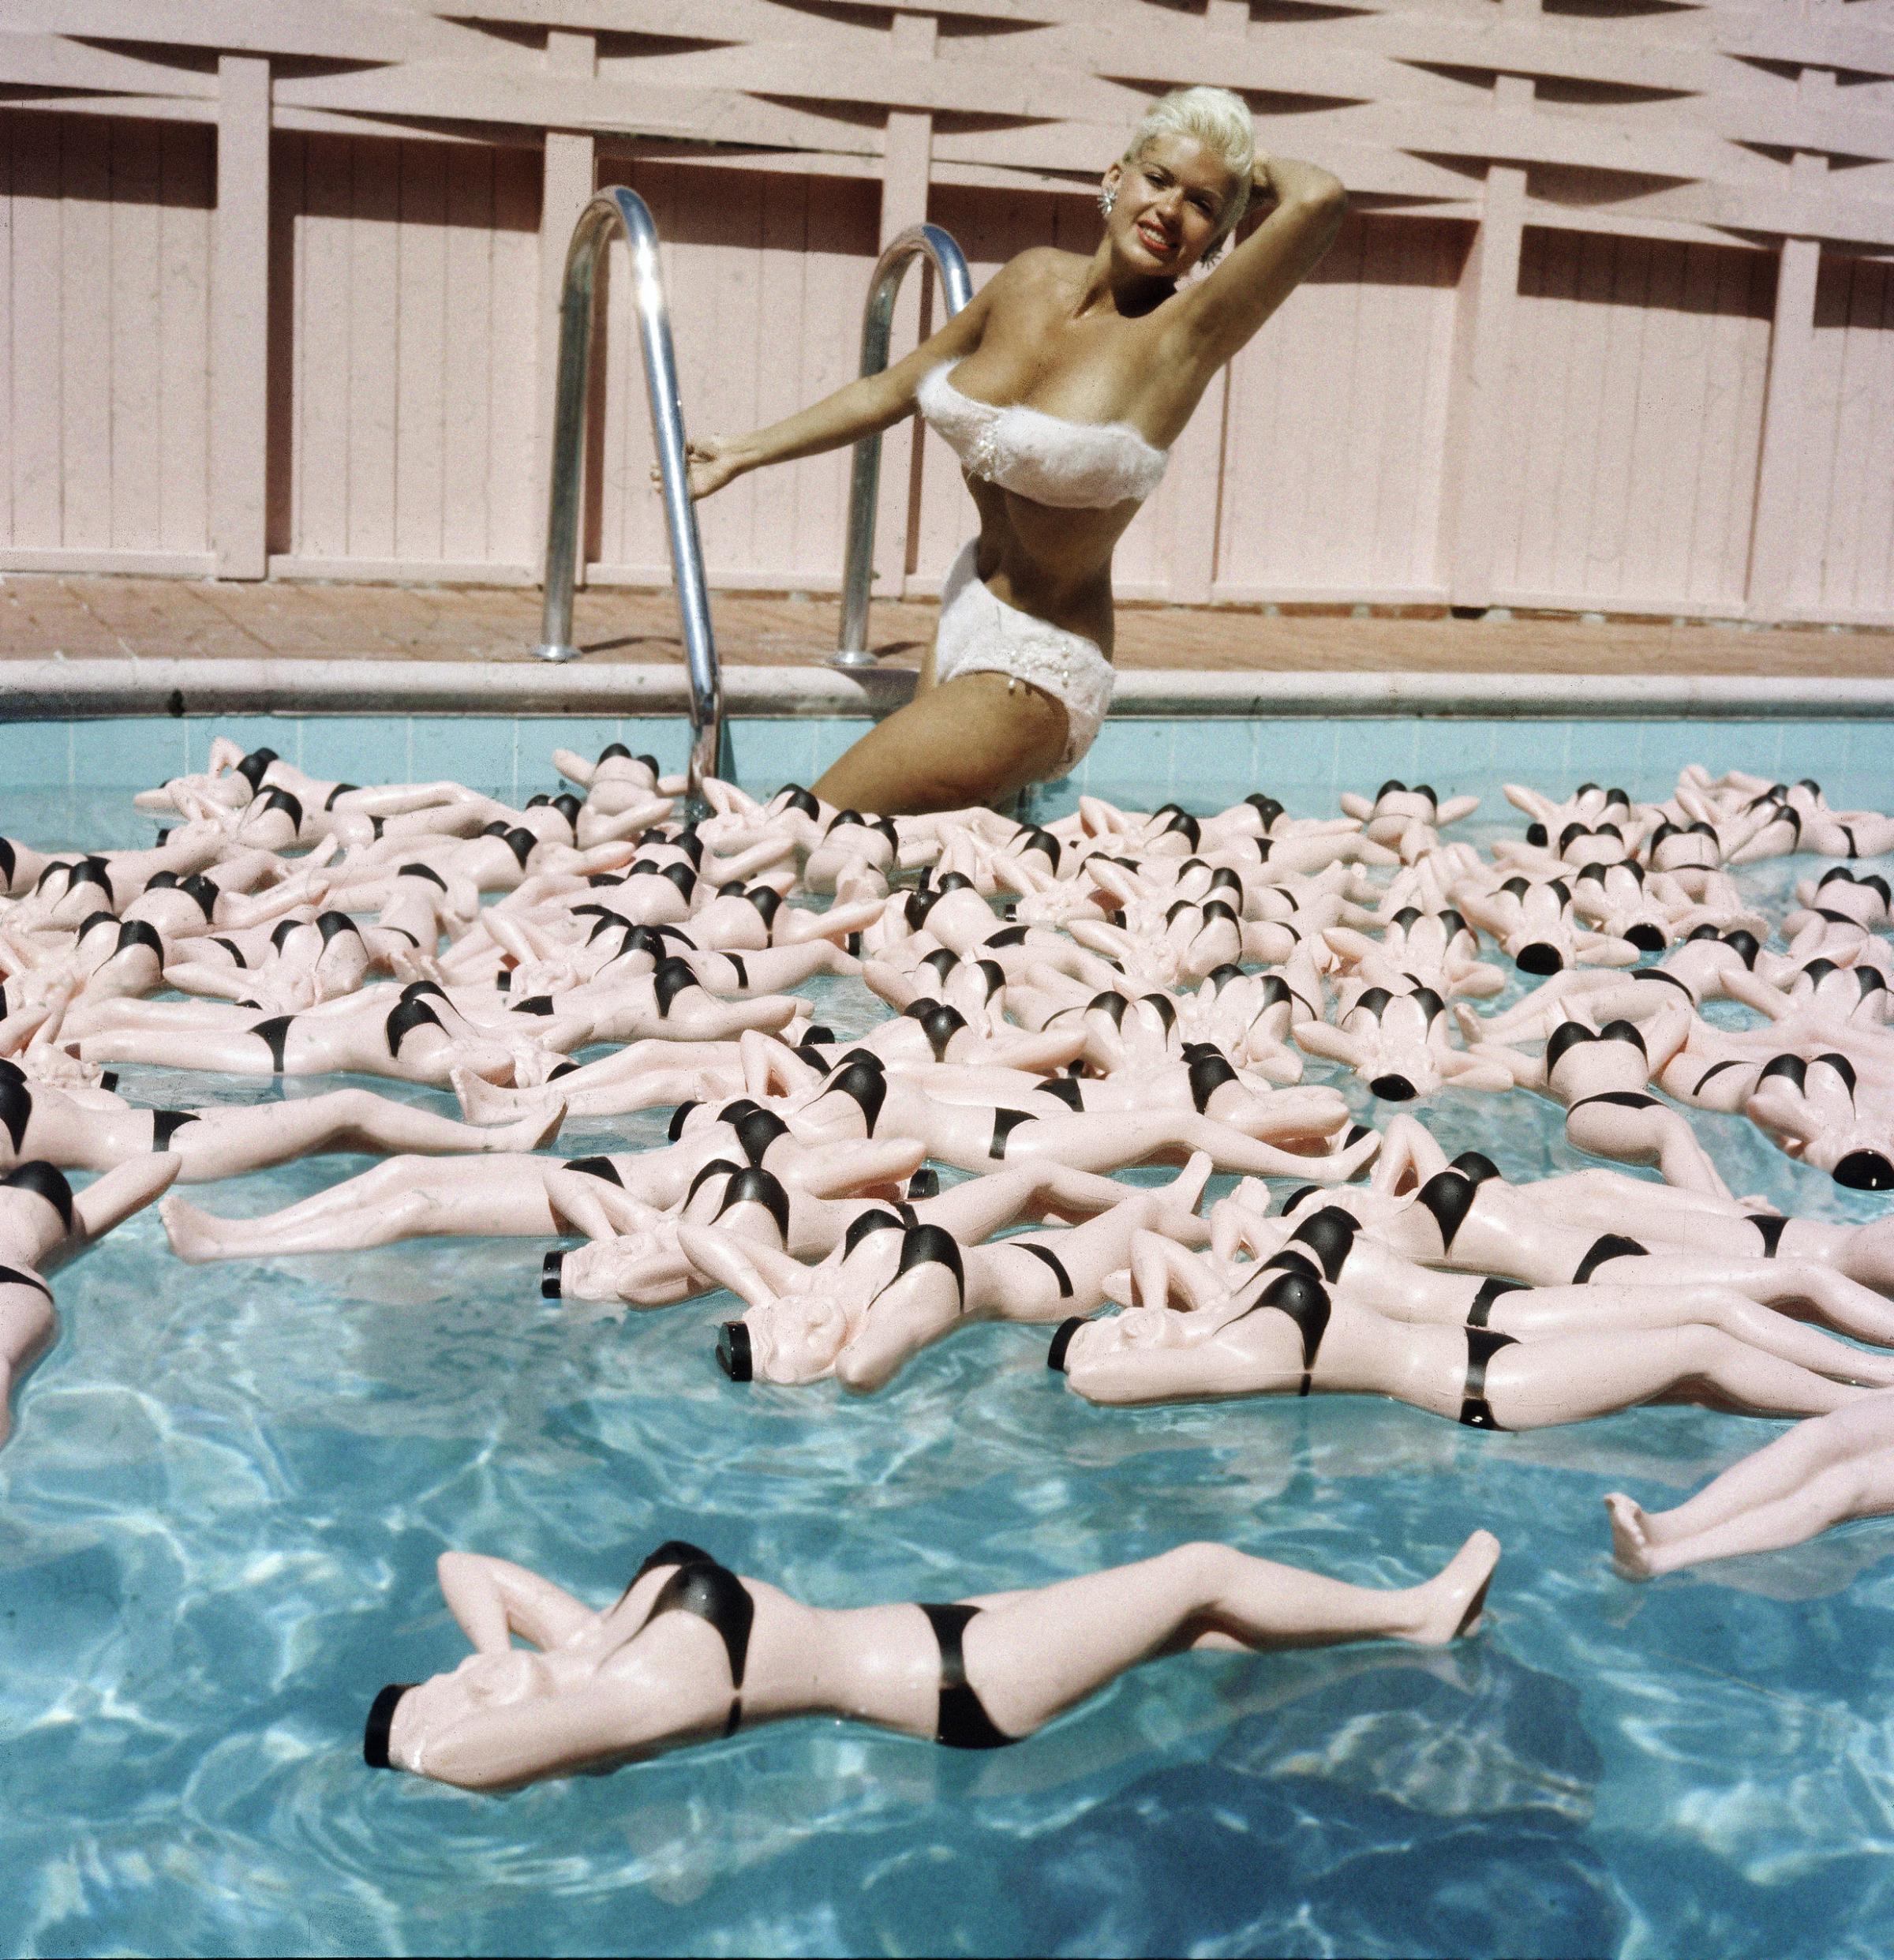 Jayne Mansfield posing hot water bottle likenesses floating around her in her pool.